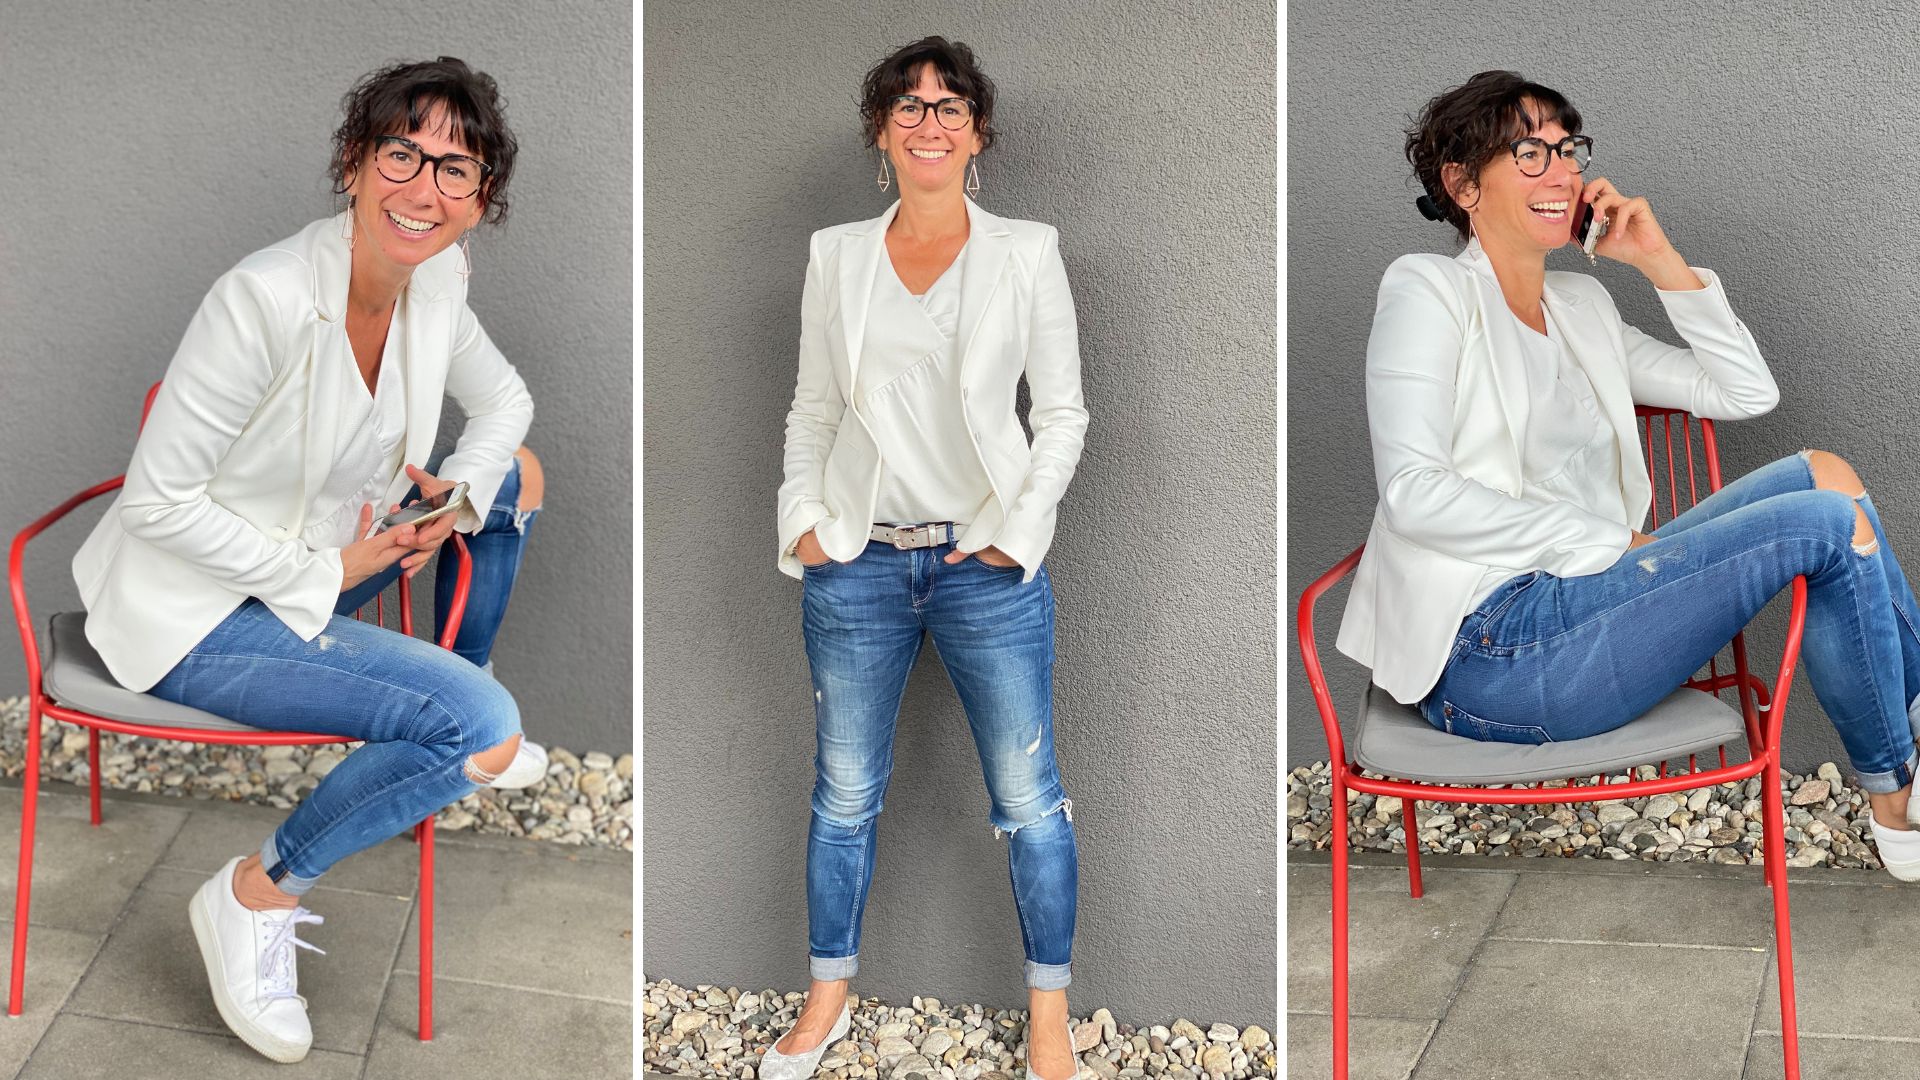 Drei kleine Bilder von Claudia Potschigmann, Female Empowerment- und Business-Coach, zeigen sie in verschiedenen Posen, auf einem Stuhl und stehend.